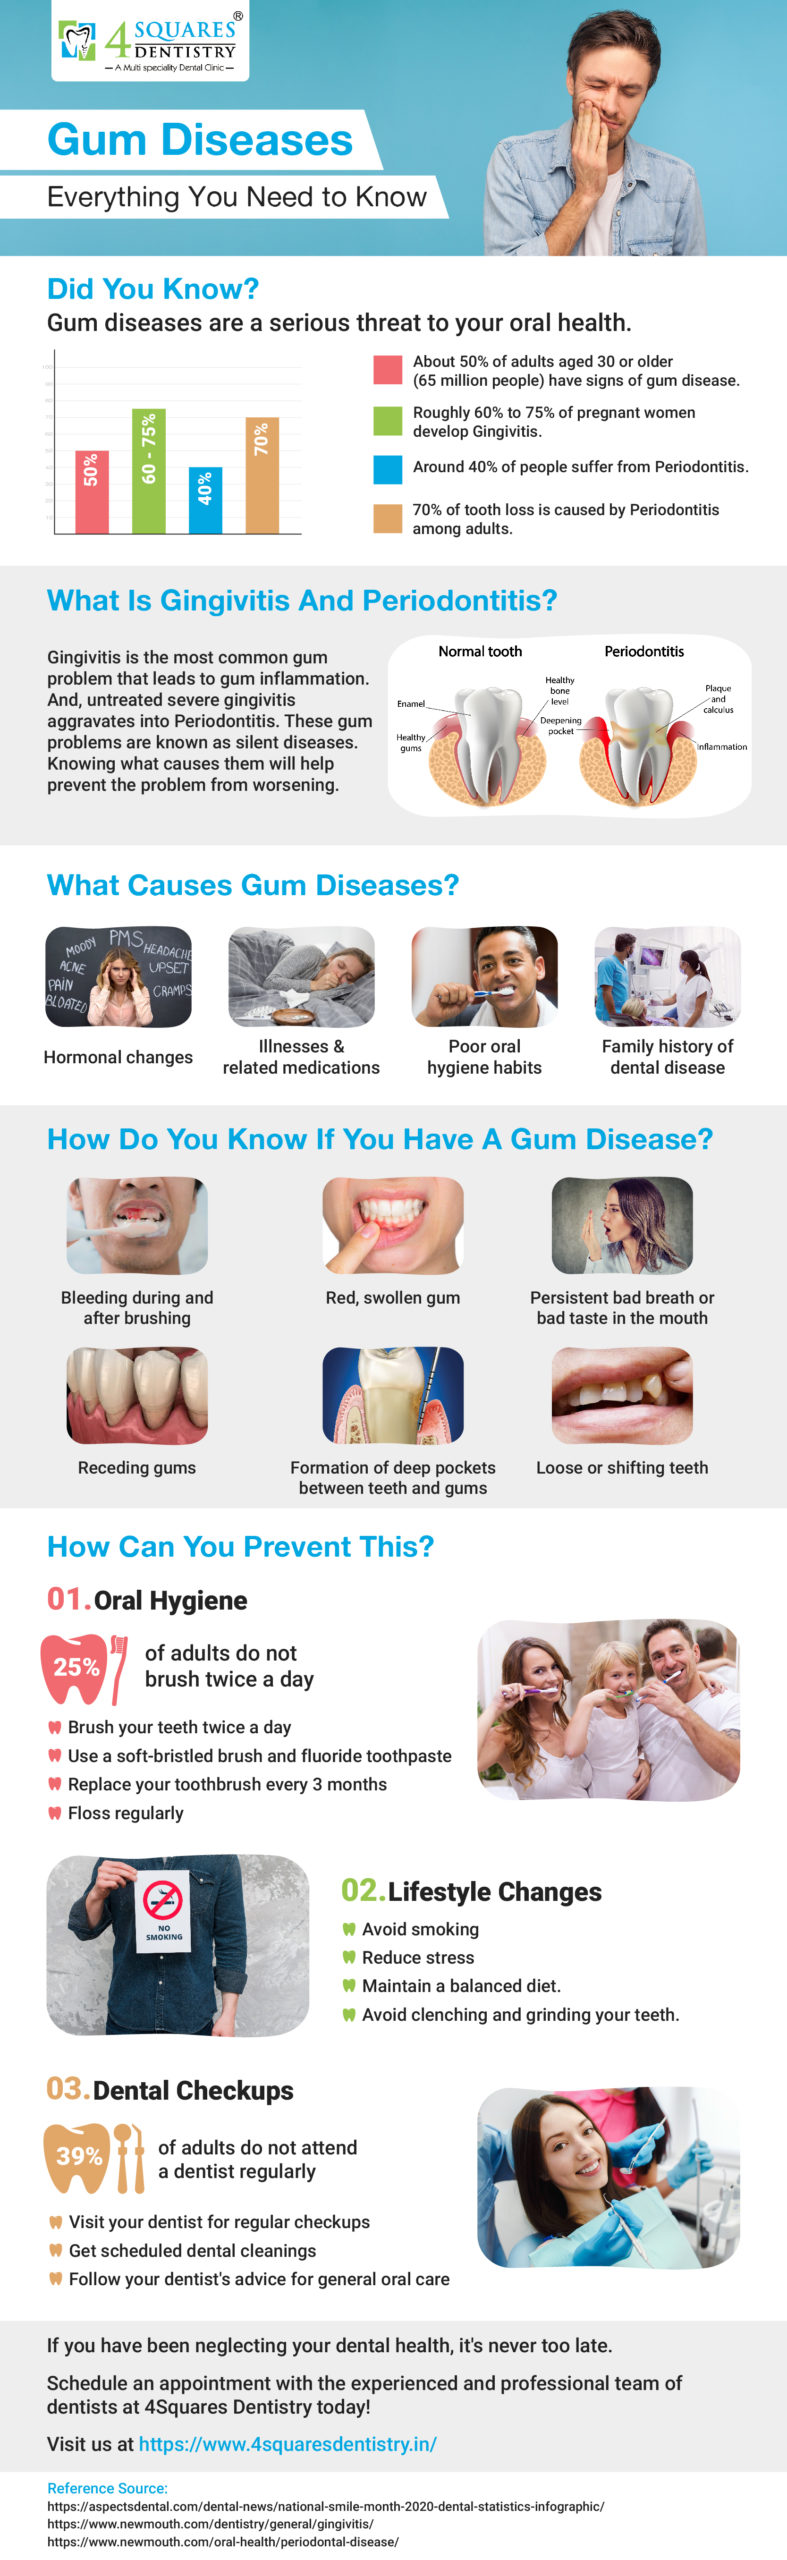 Gum Diseases Infographic